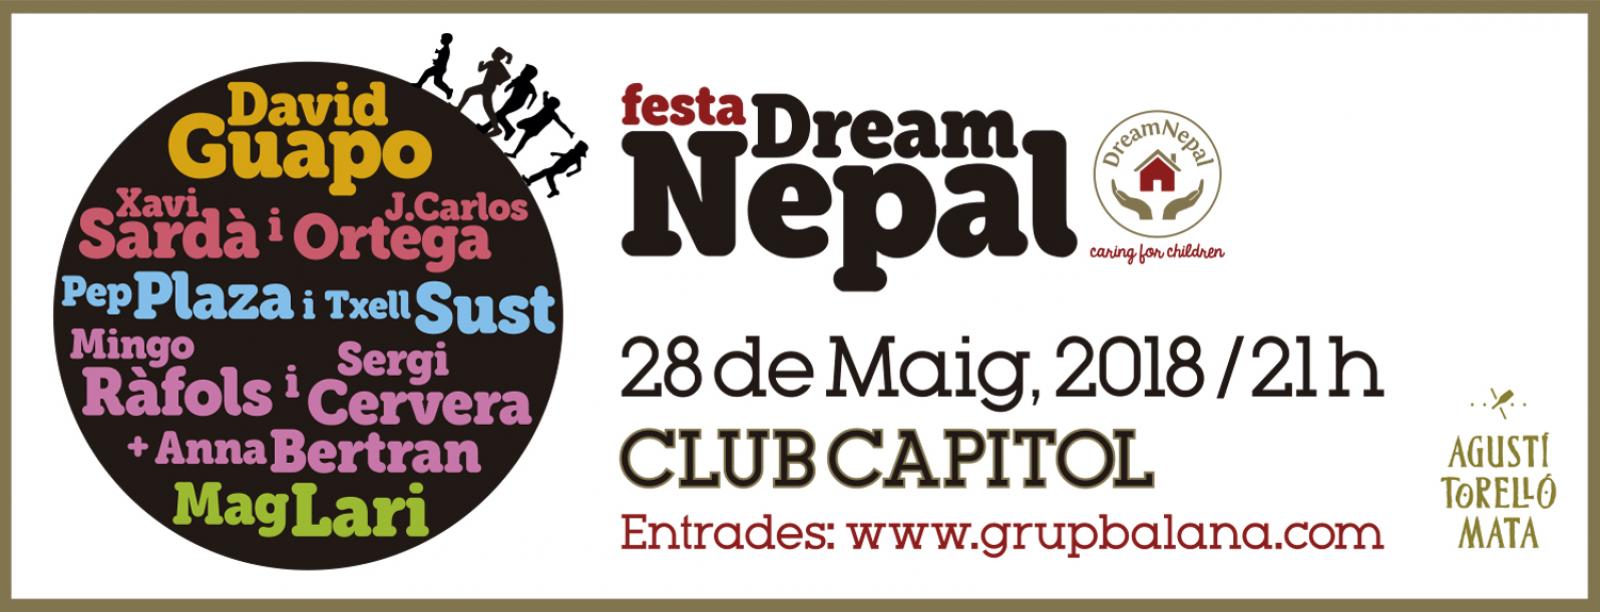 David Guapo solidario con Dream Nepal